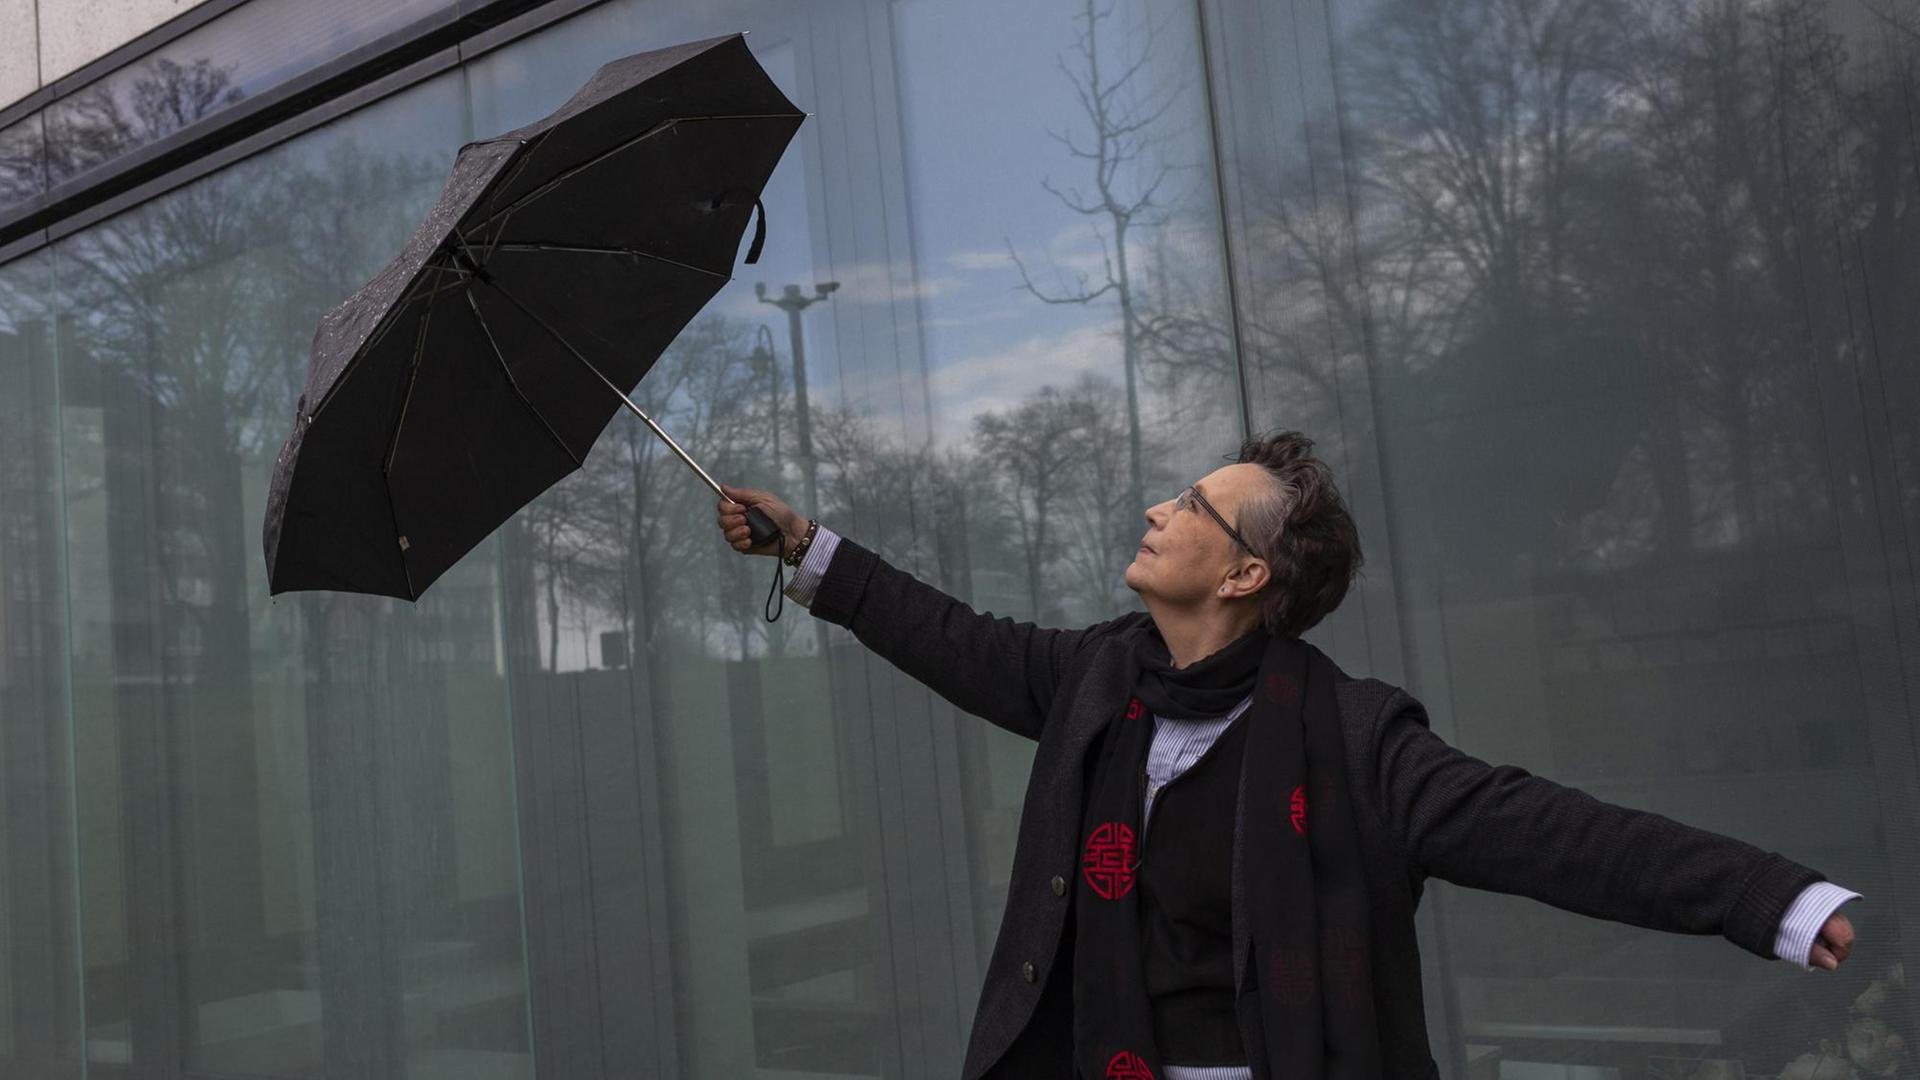 Heide-Marie Härtel hat einen Schirm in der Hand und tanzt damit vor einer Glasfassade